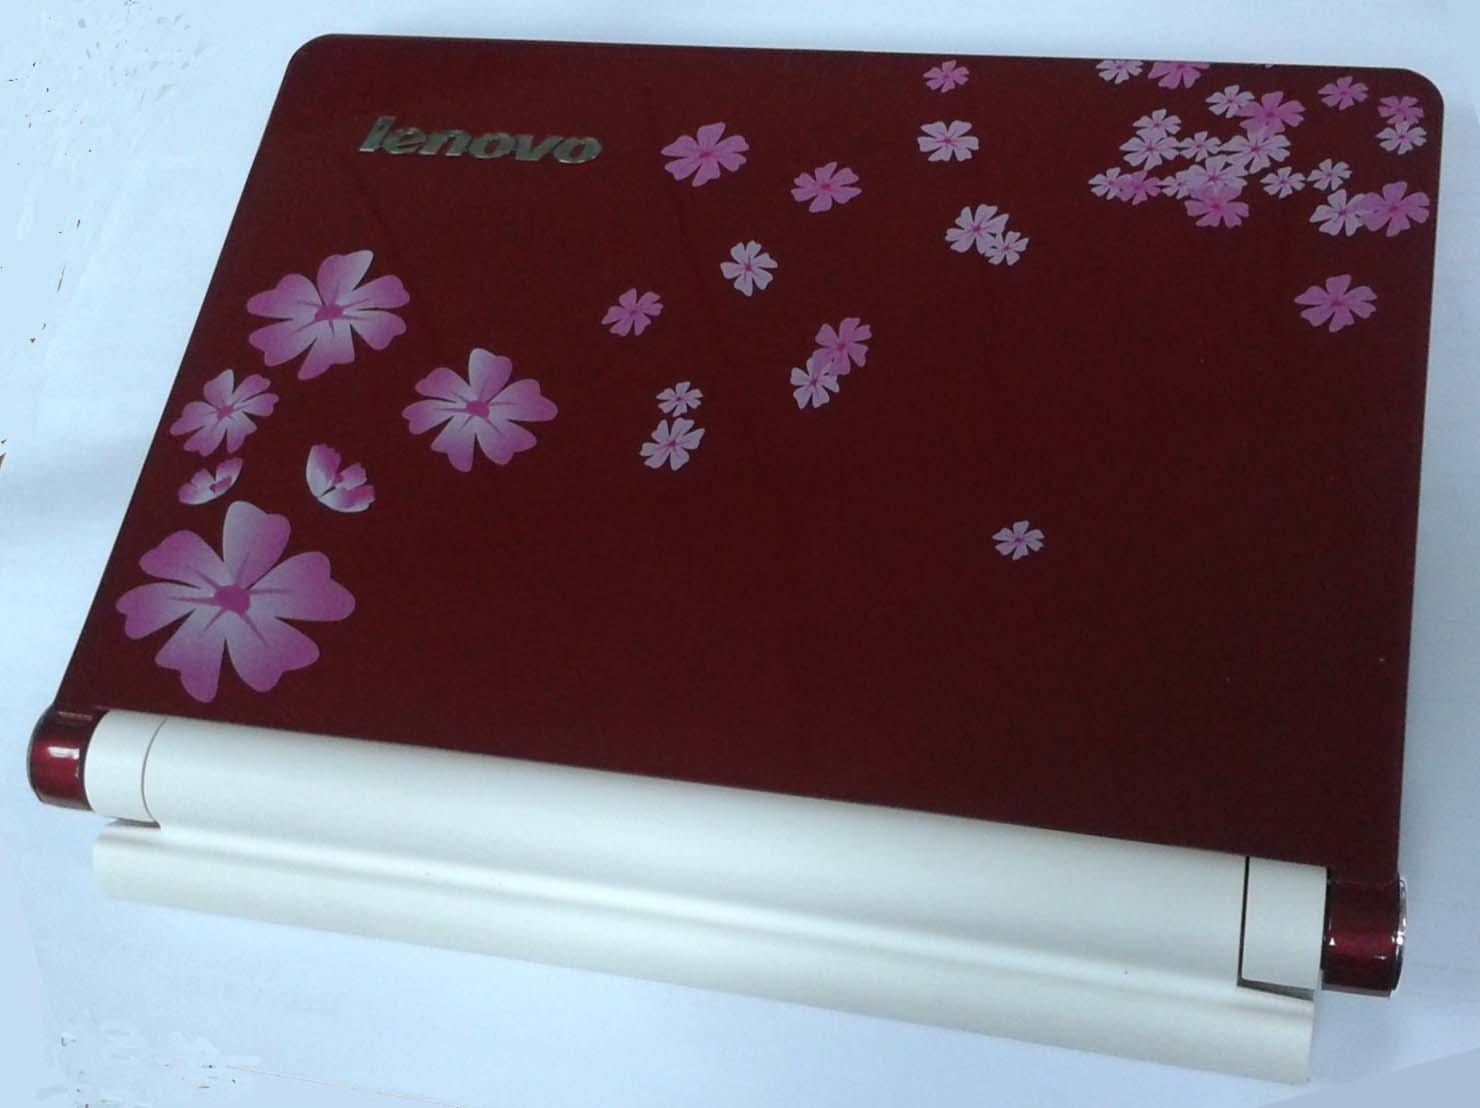 二手Lenovo IdeaPad S10 10吋小筆電出售 $5000元/台